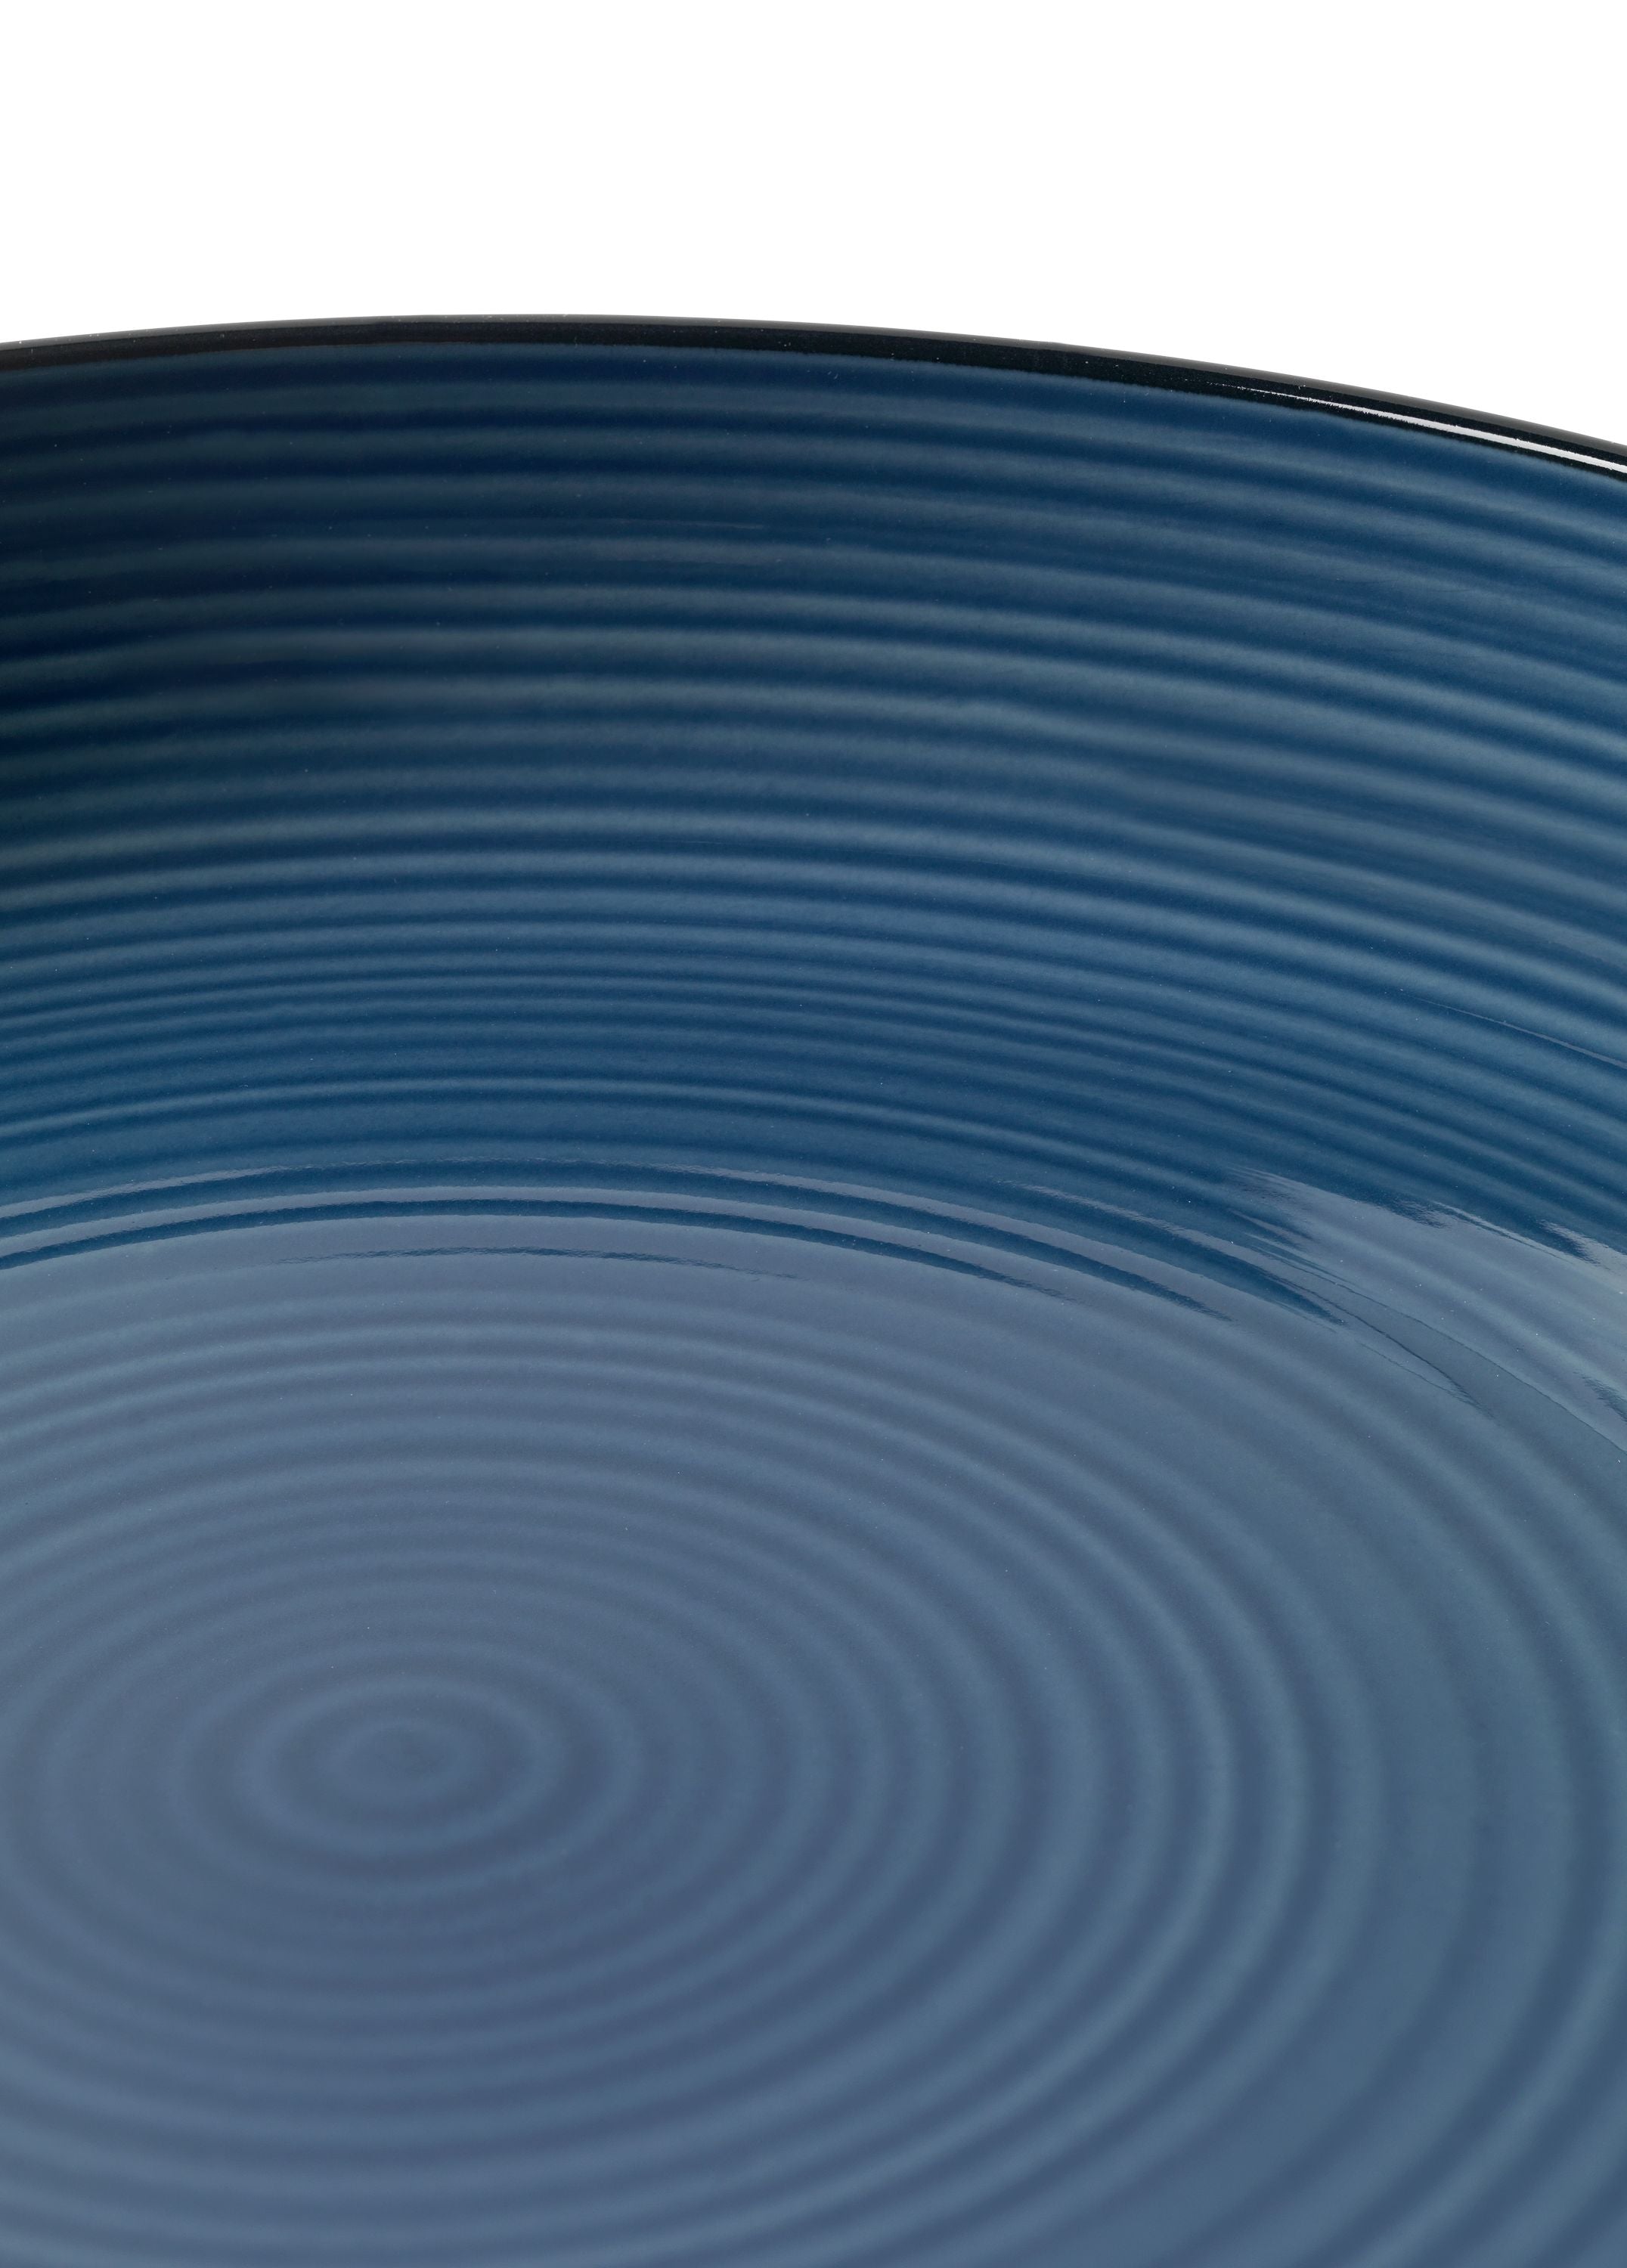 Kähler Colore Quiche Dish Ø28 cm, Berry Blue